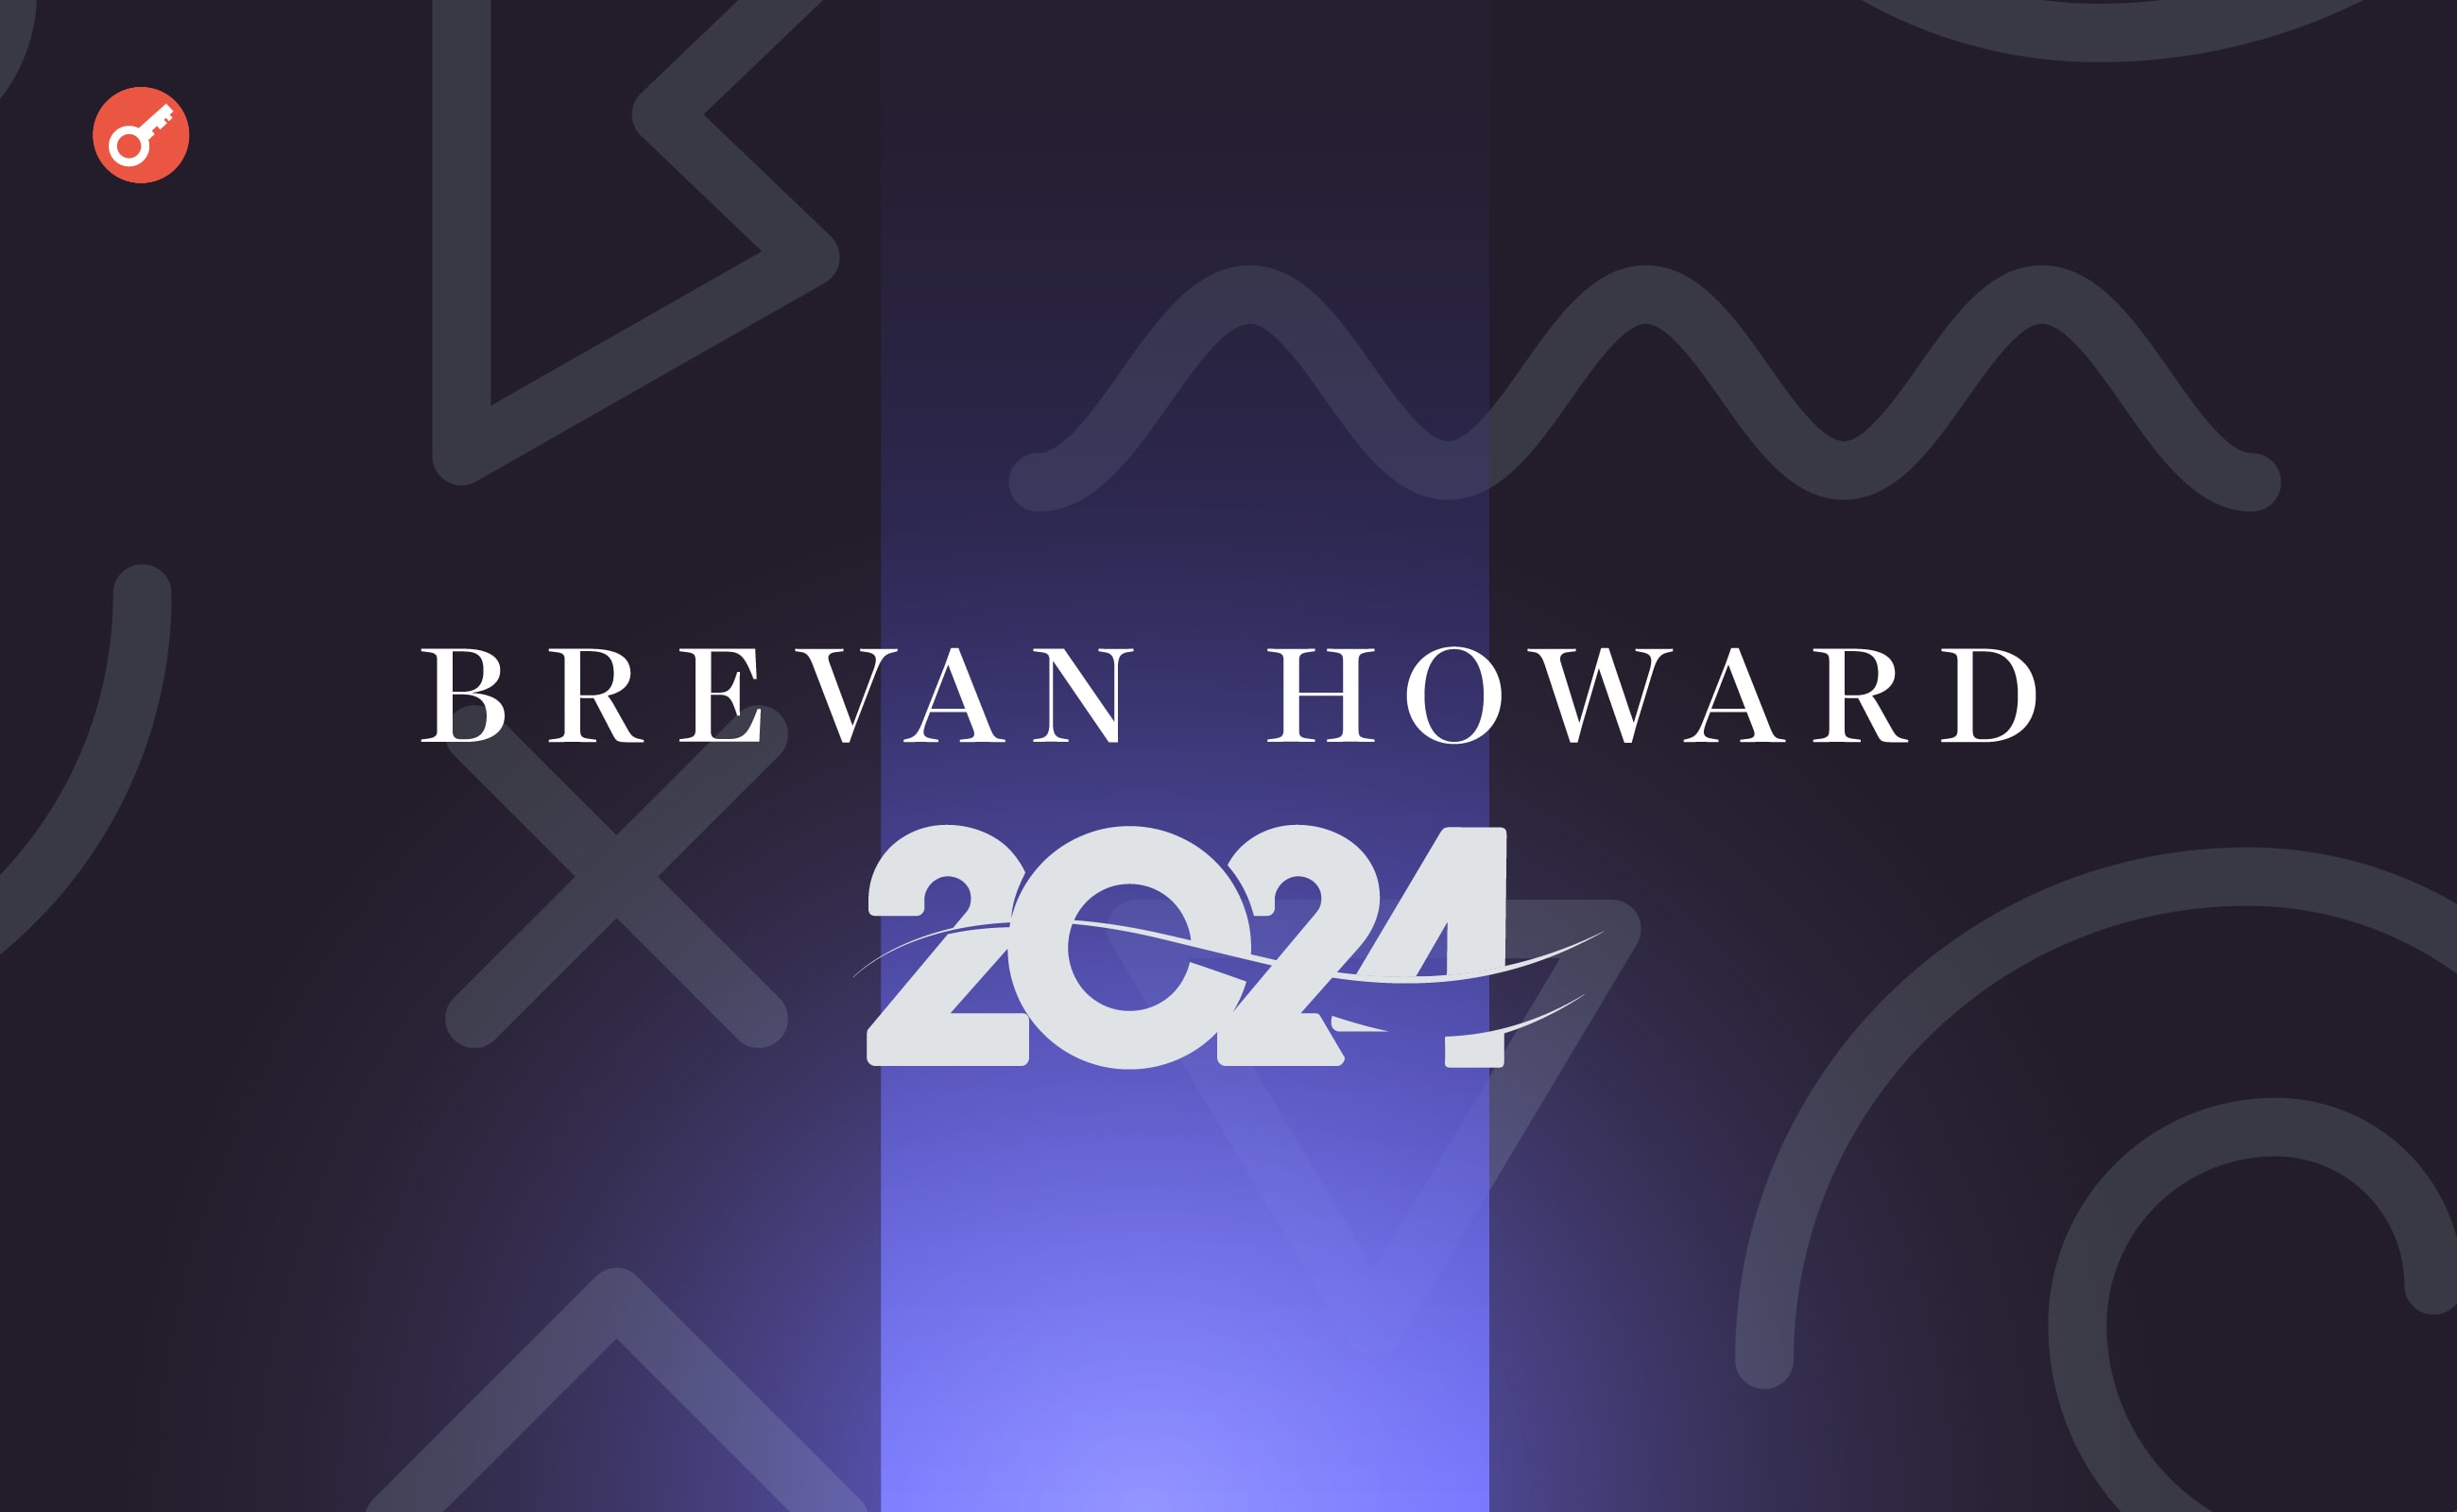 Эксперты Brevan Howard поделились прогнозом по крипторынку на 2024 год. Заглавный коллаж новости.